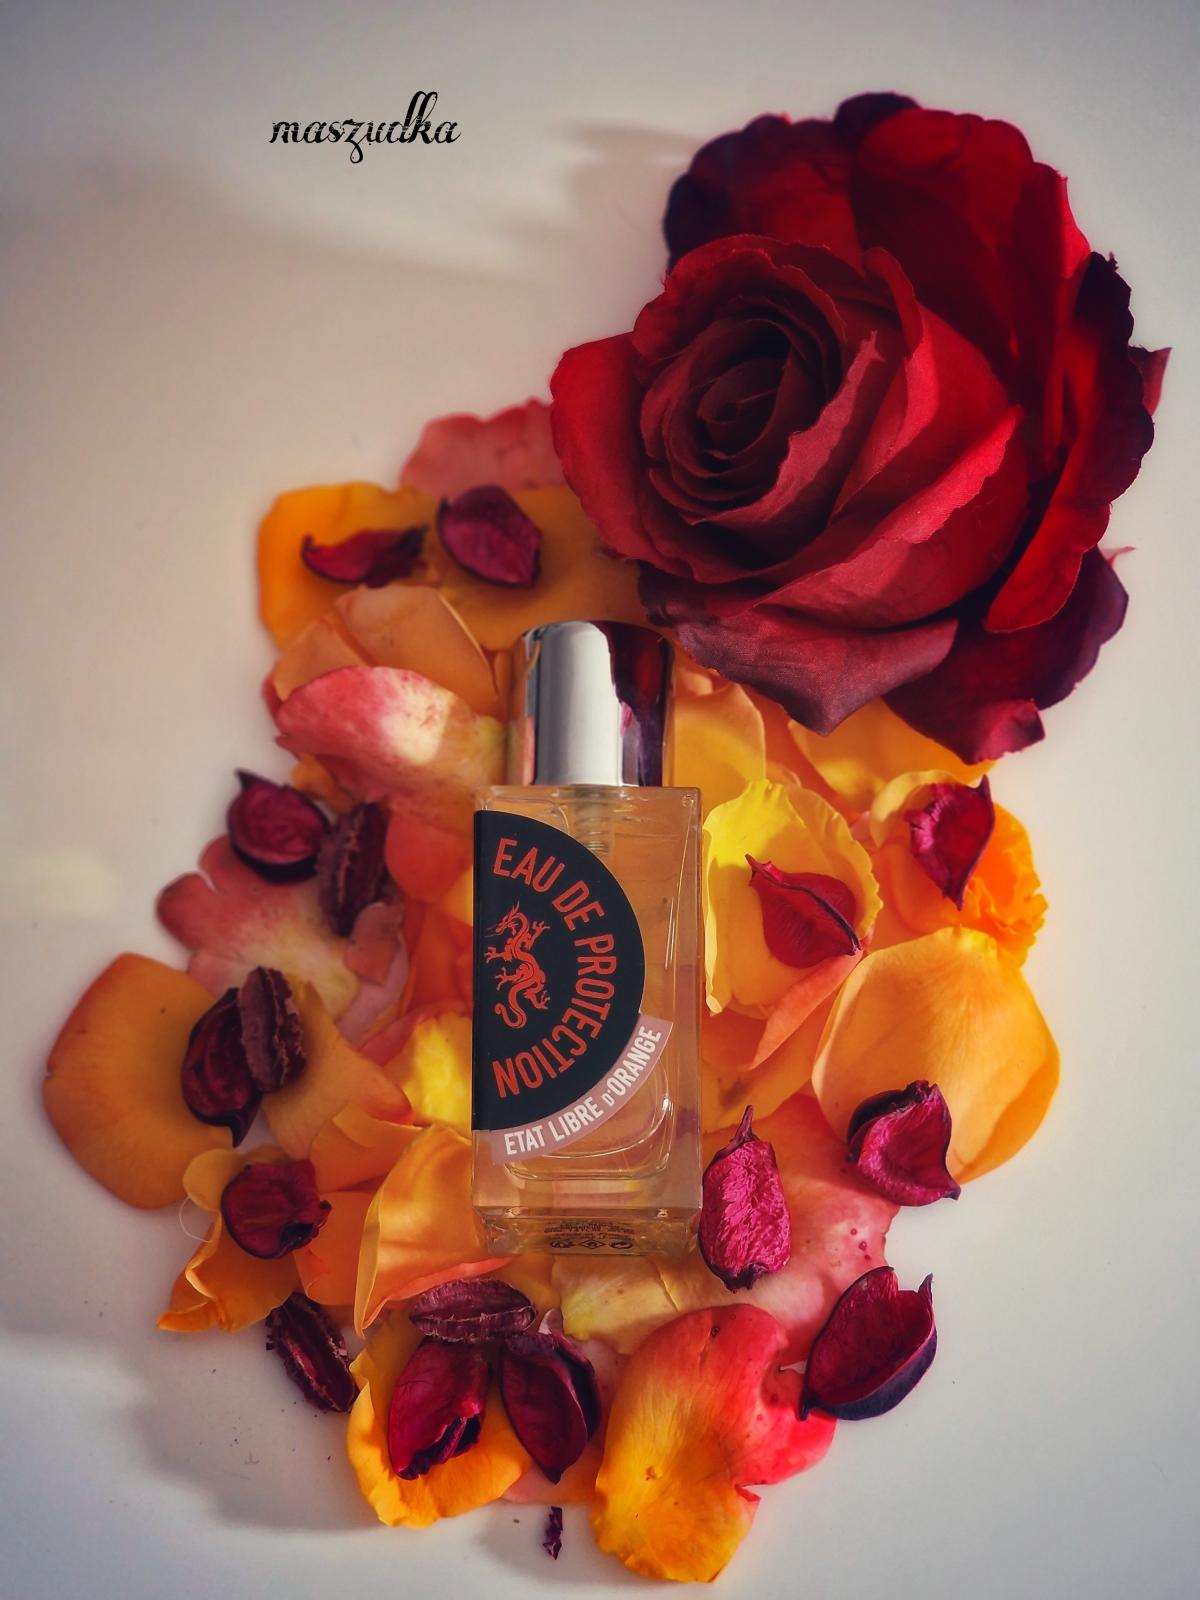 Rossy de Palma Eau de Protection Etat Libre d'Orange perfume - a